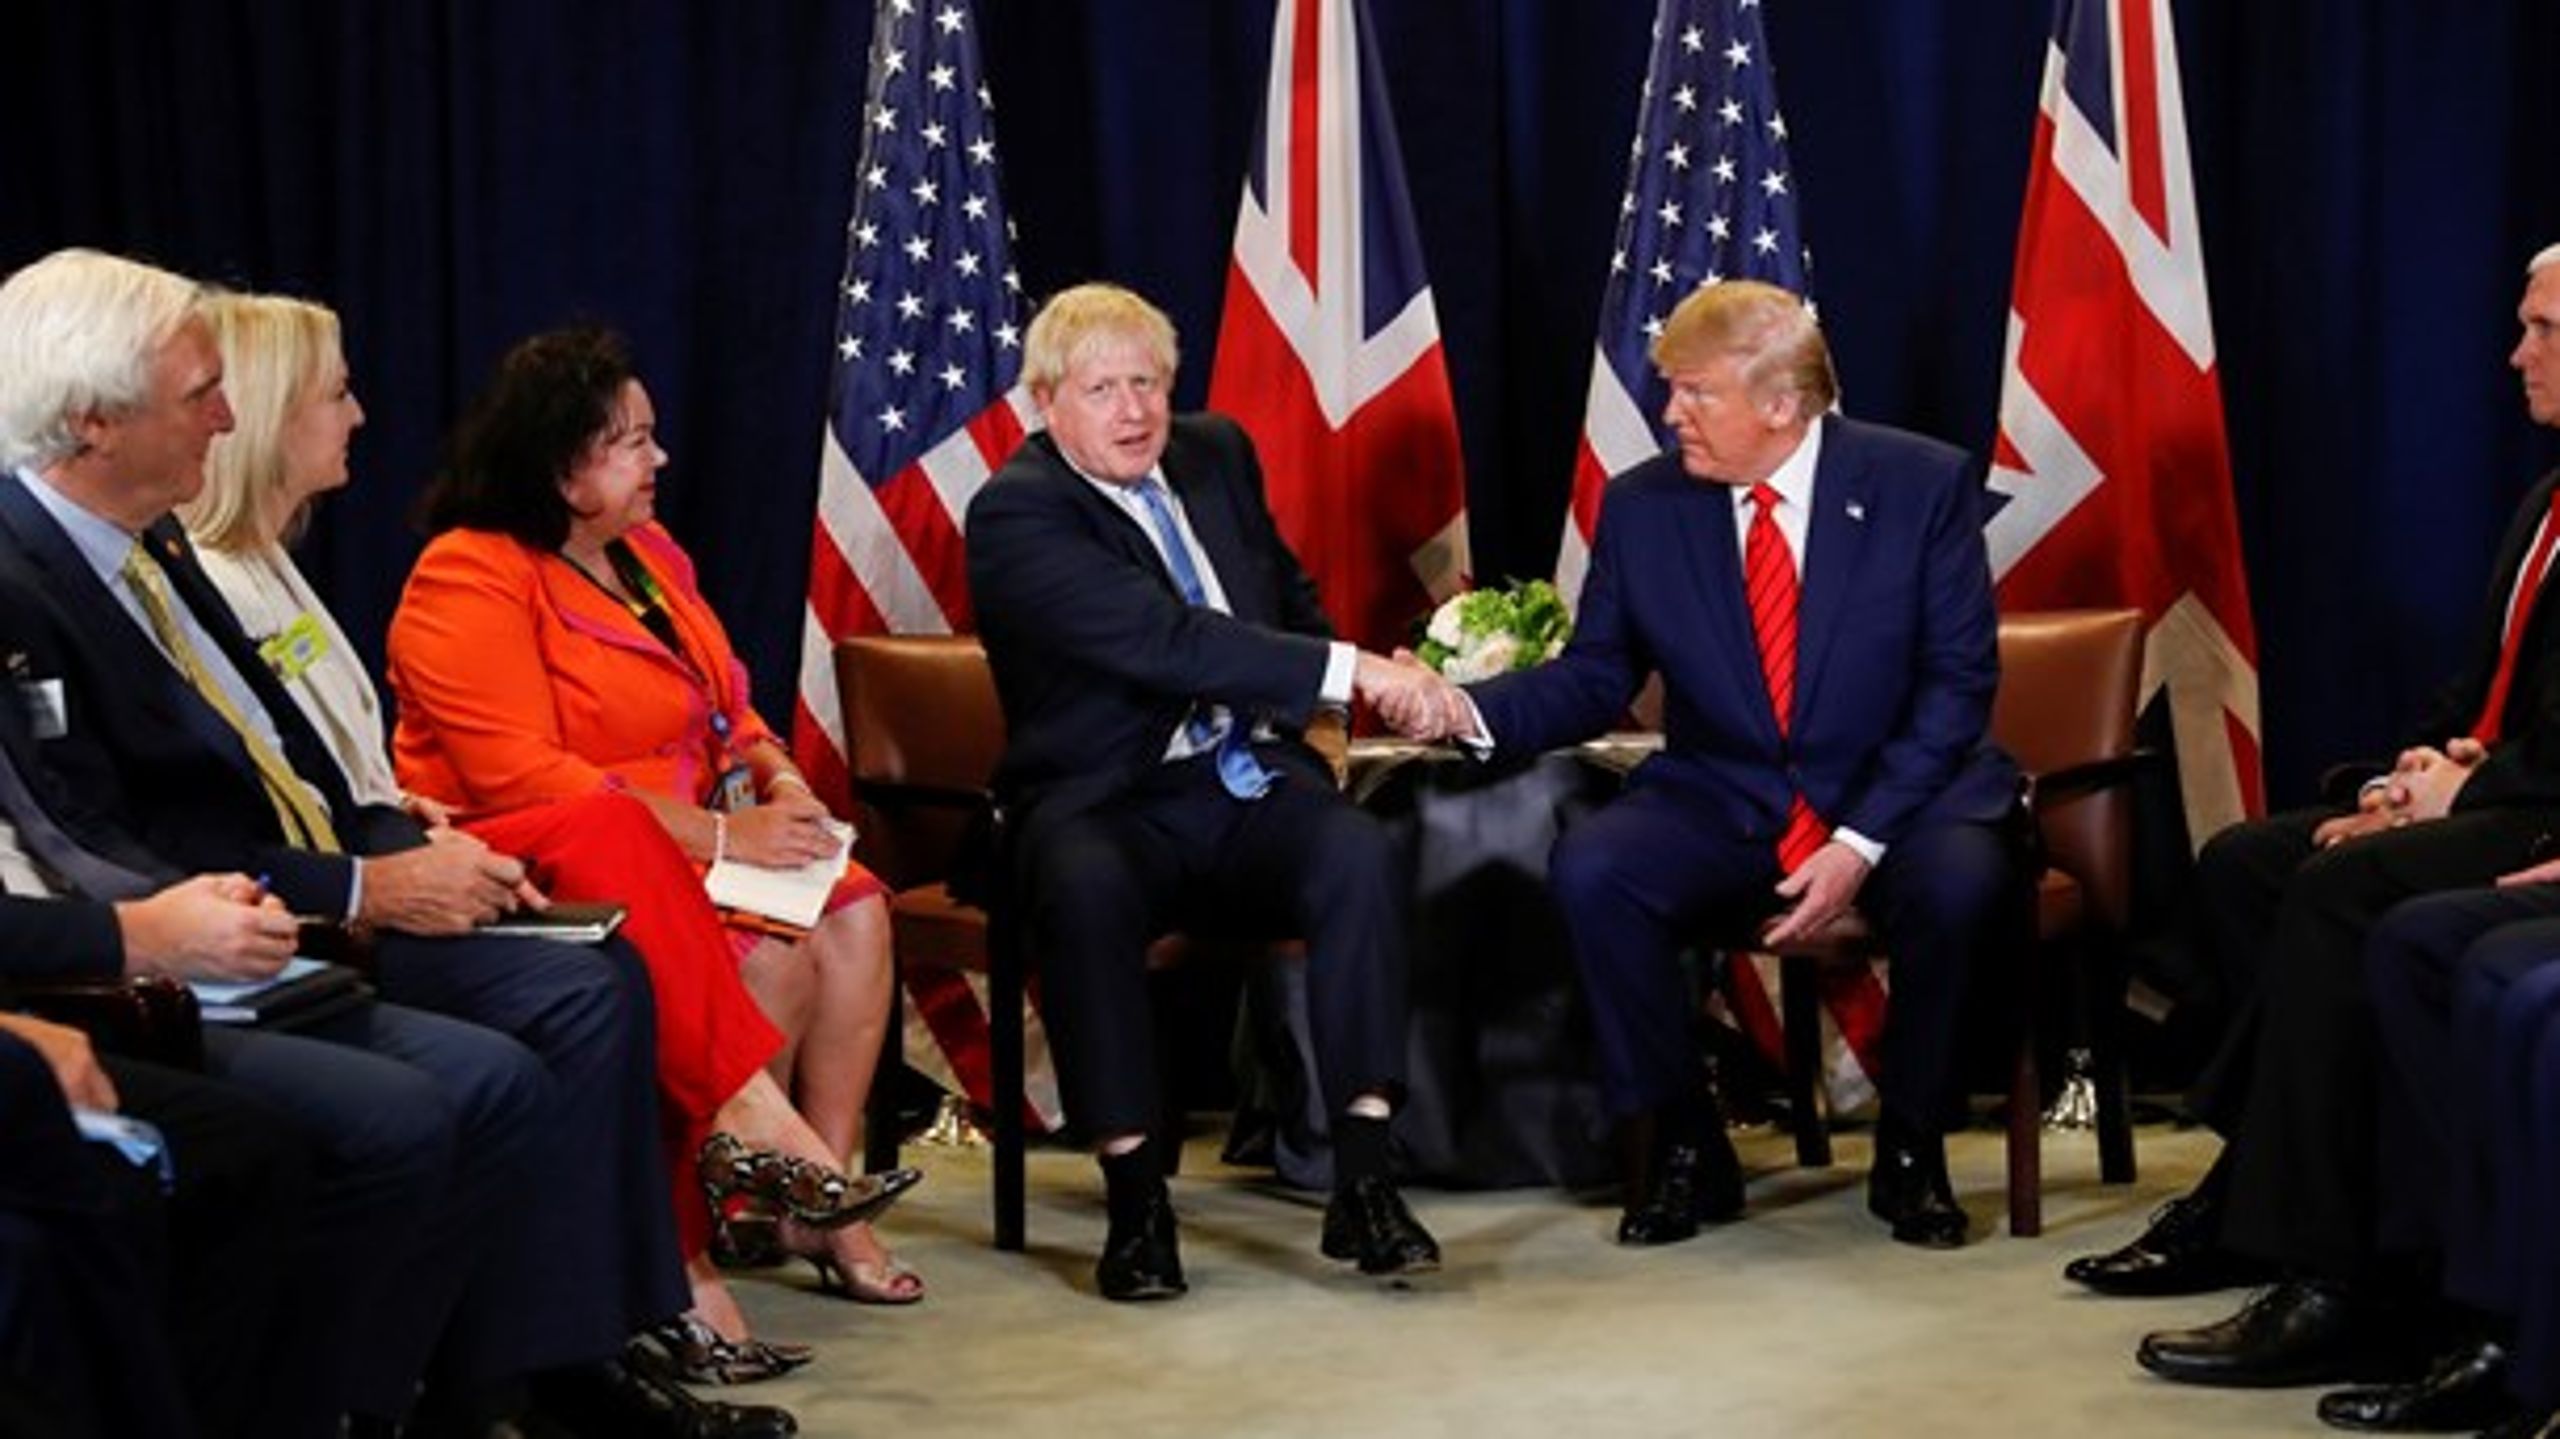 Storbritannien og USA falder grundlæggende sammen under coronakrisen med deres selvfede lederes uformåenhed, skriver David Trads.